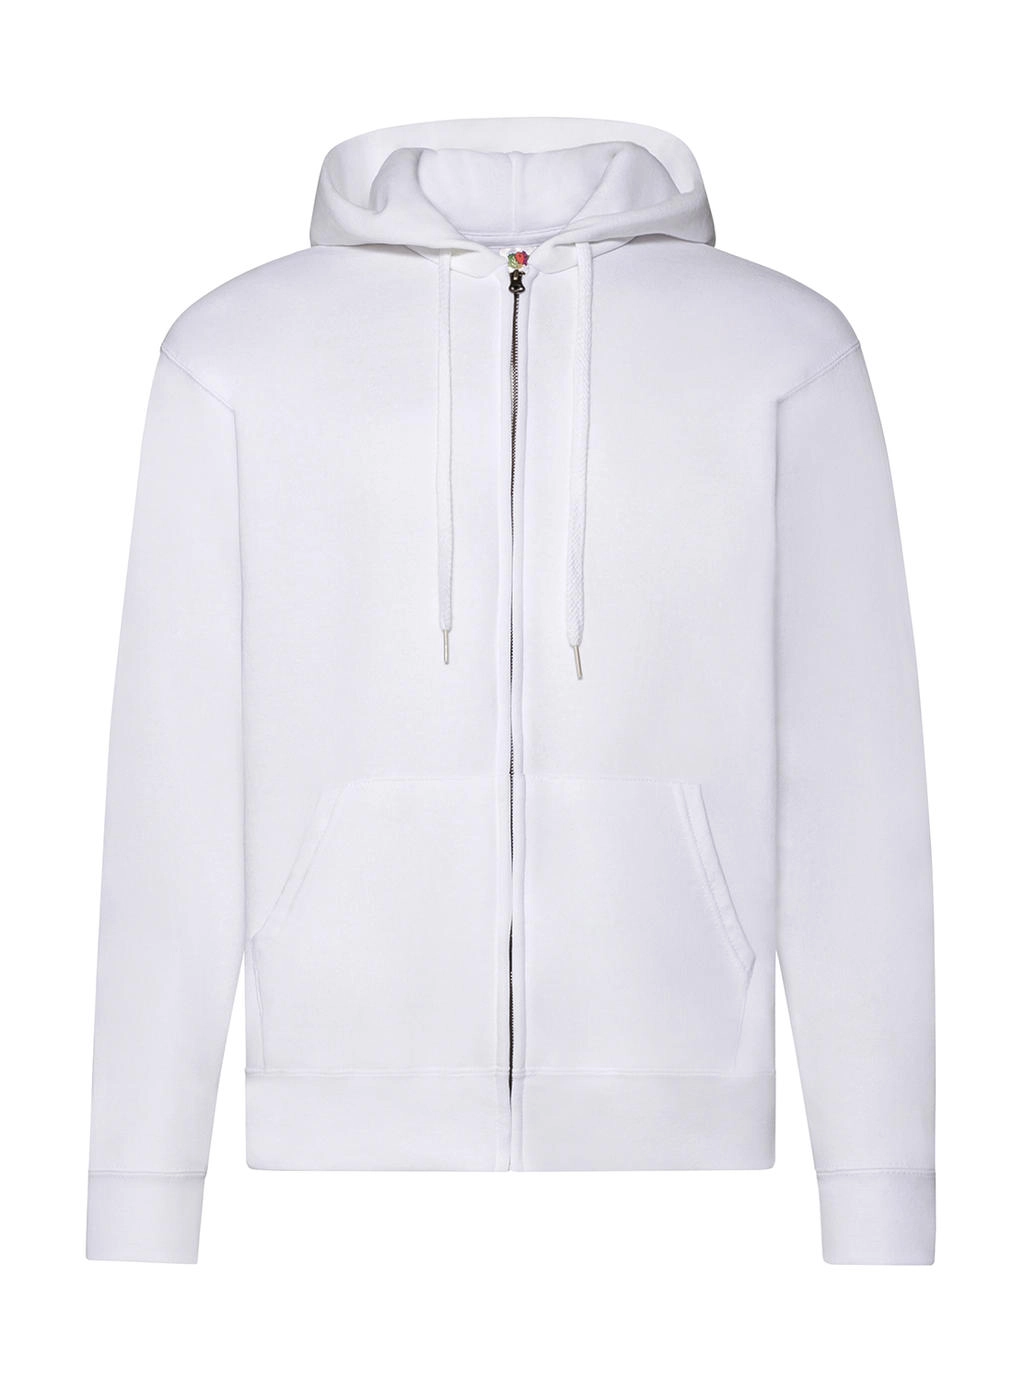 Classic Hooded Sweat Jacket zum Besticken und Bedrucken in der Farbe White mit Ihren Logo, Schriftzug oder Motiv.